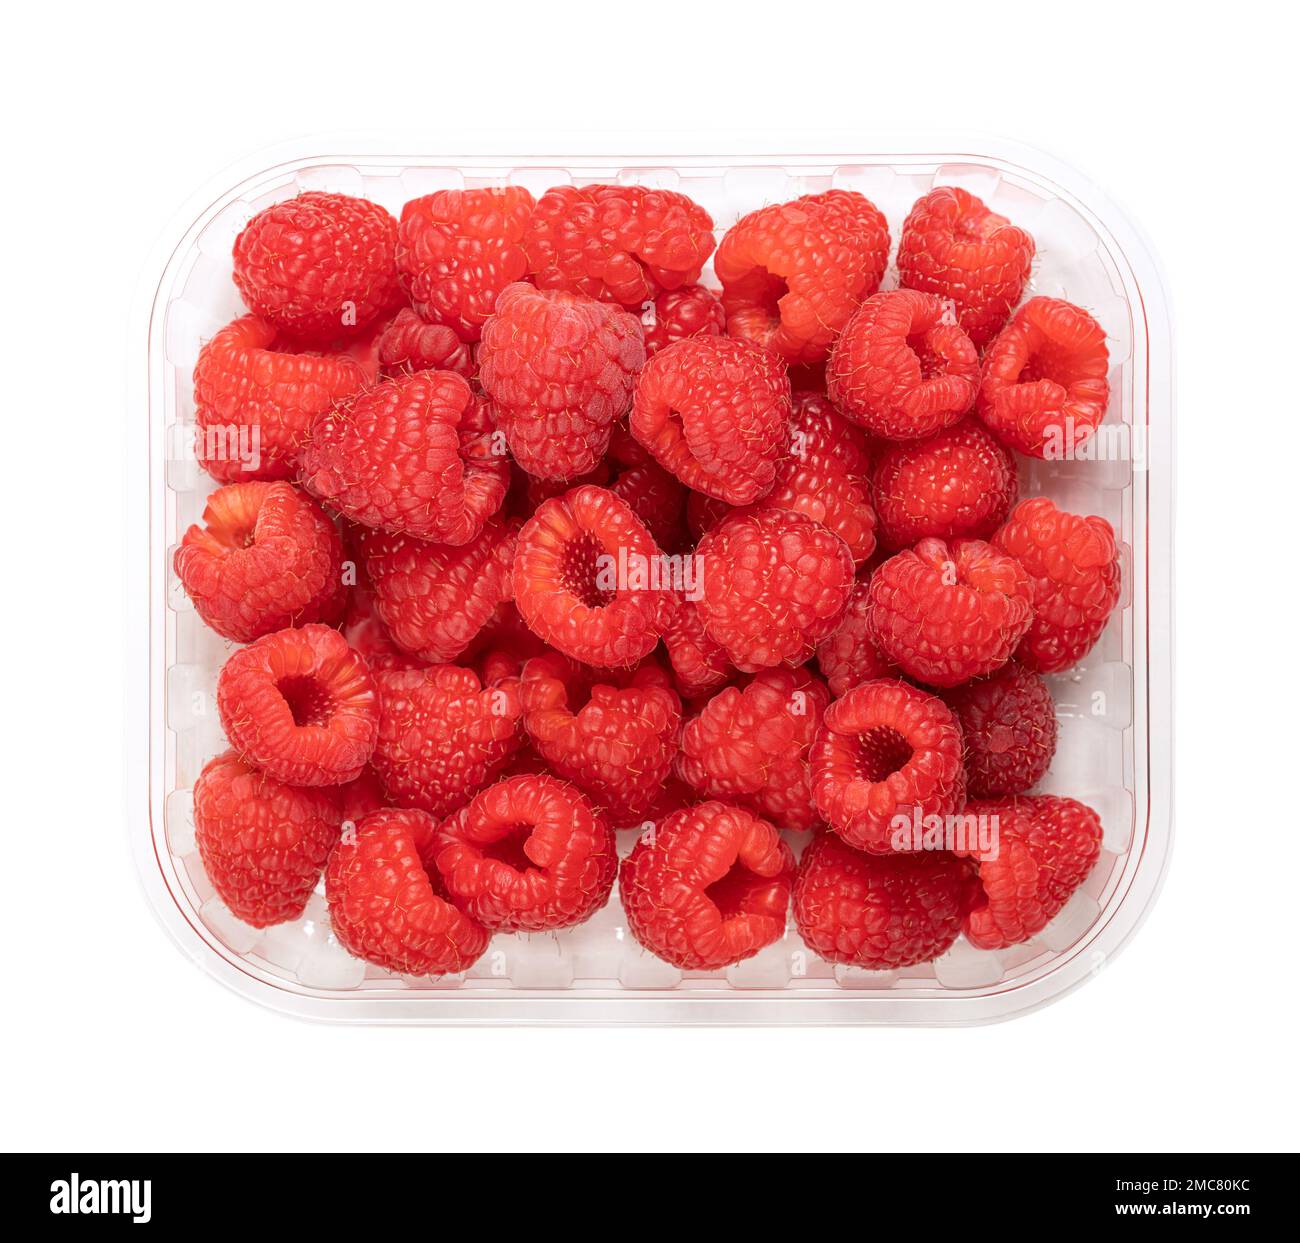 Ganz frische Himbeeren, in einer durchsichtigen Schale aus Kunststoff, von oben. Reife, rote und süße Früchte von Rubus idaeus, der kultivierten europäischen Himbeere. Stockfoto